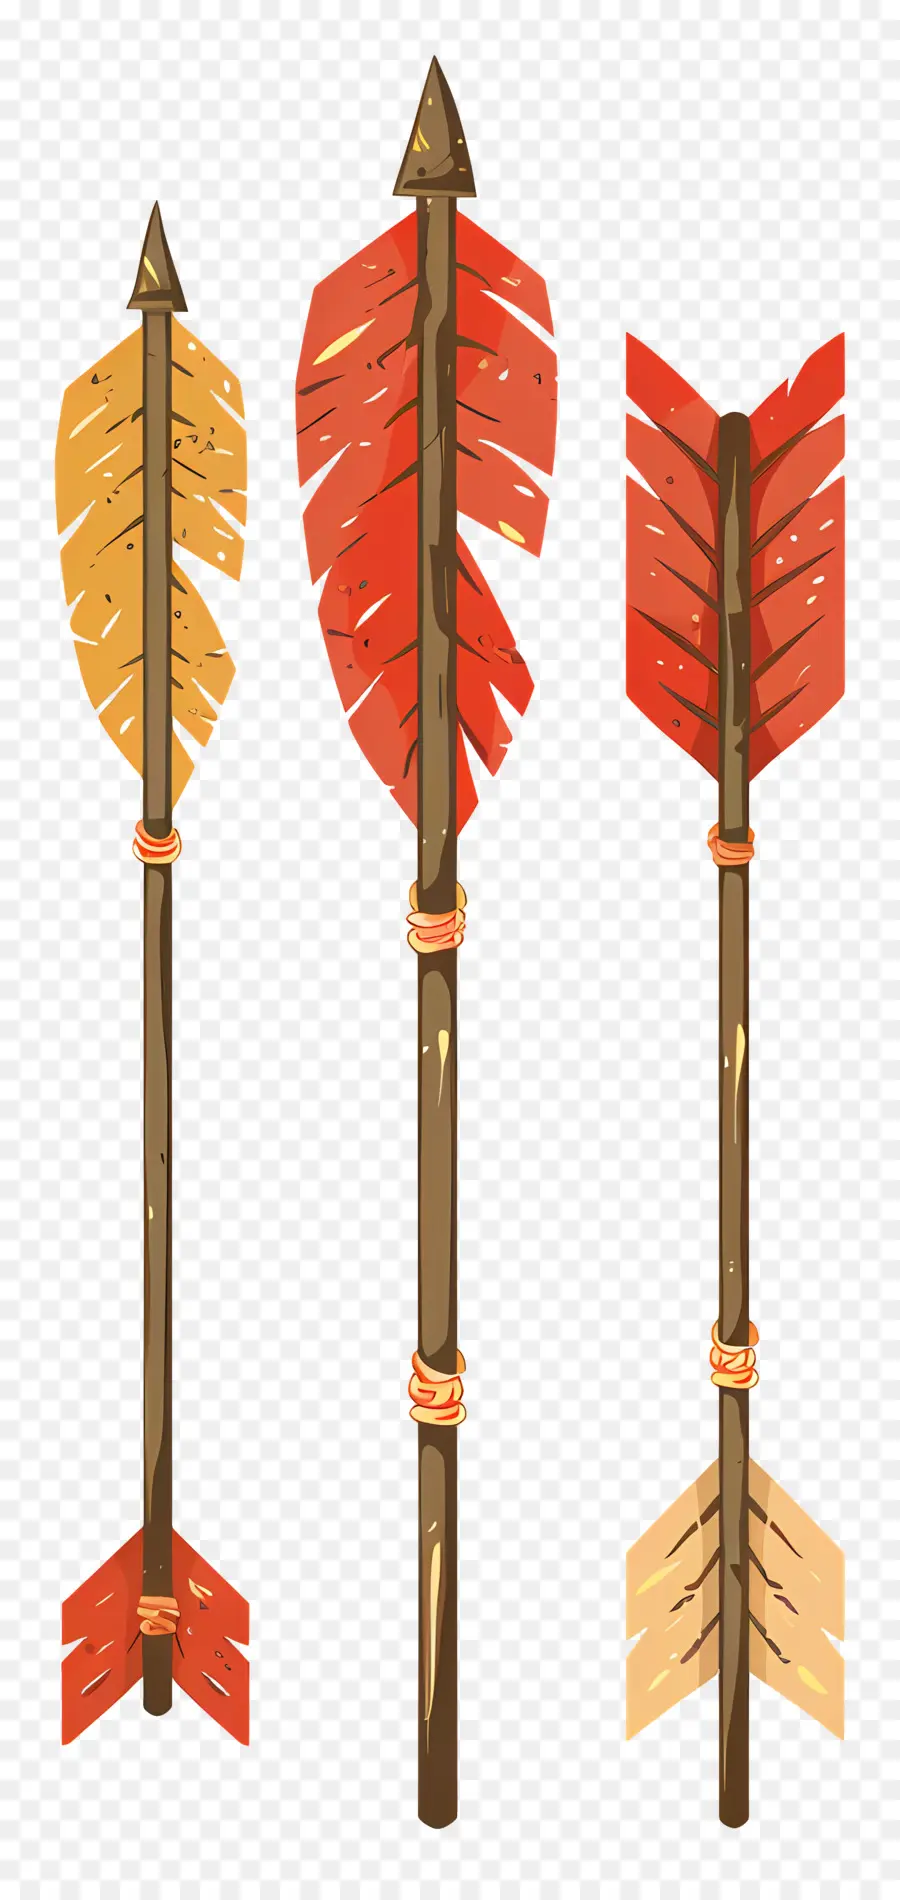 freccia rossa - Tre frecce in legno, rosso e giallo